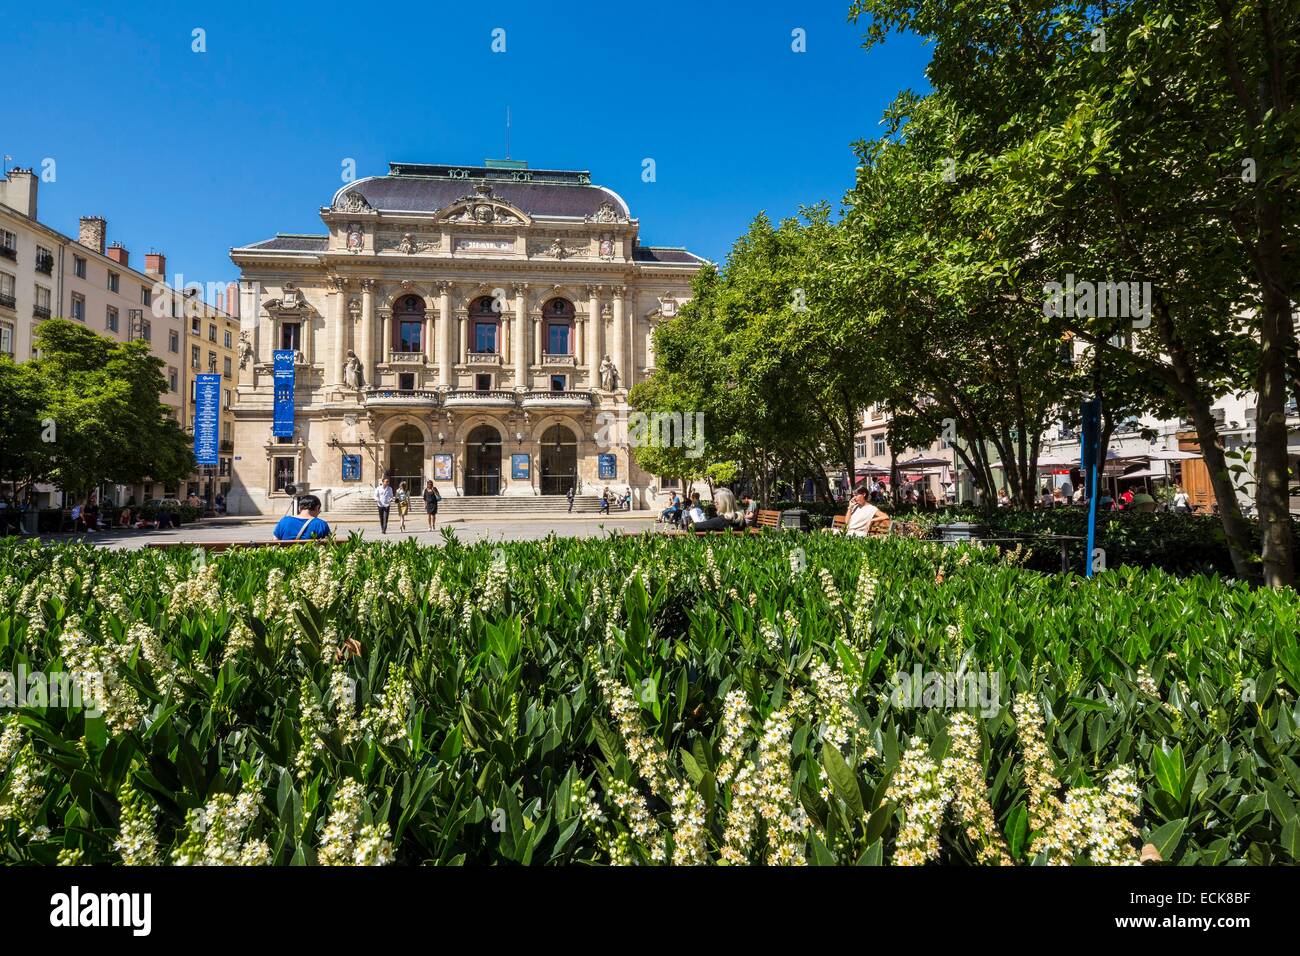 Francia, Ródano, Lyon, sitio histórico catalogado como Patrimonio Mundial por la UNESCO, la Presqu'ile, el Theater des Celestins Foto de stock